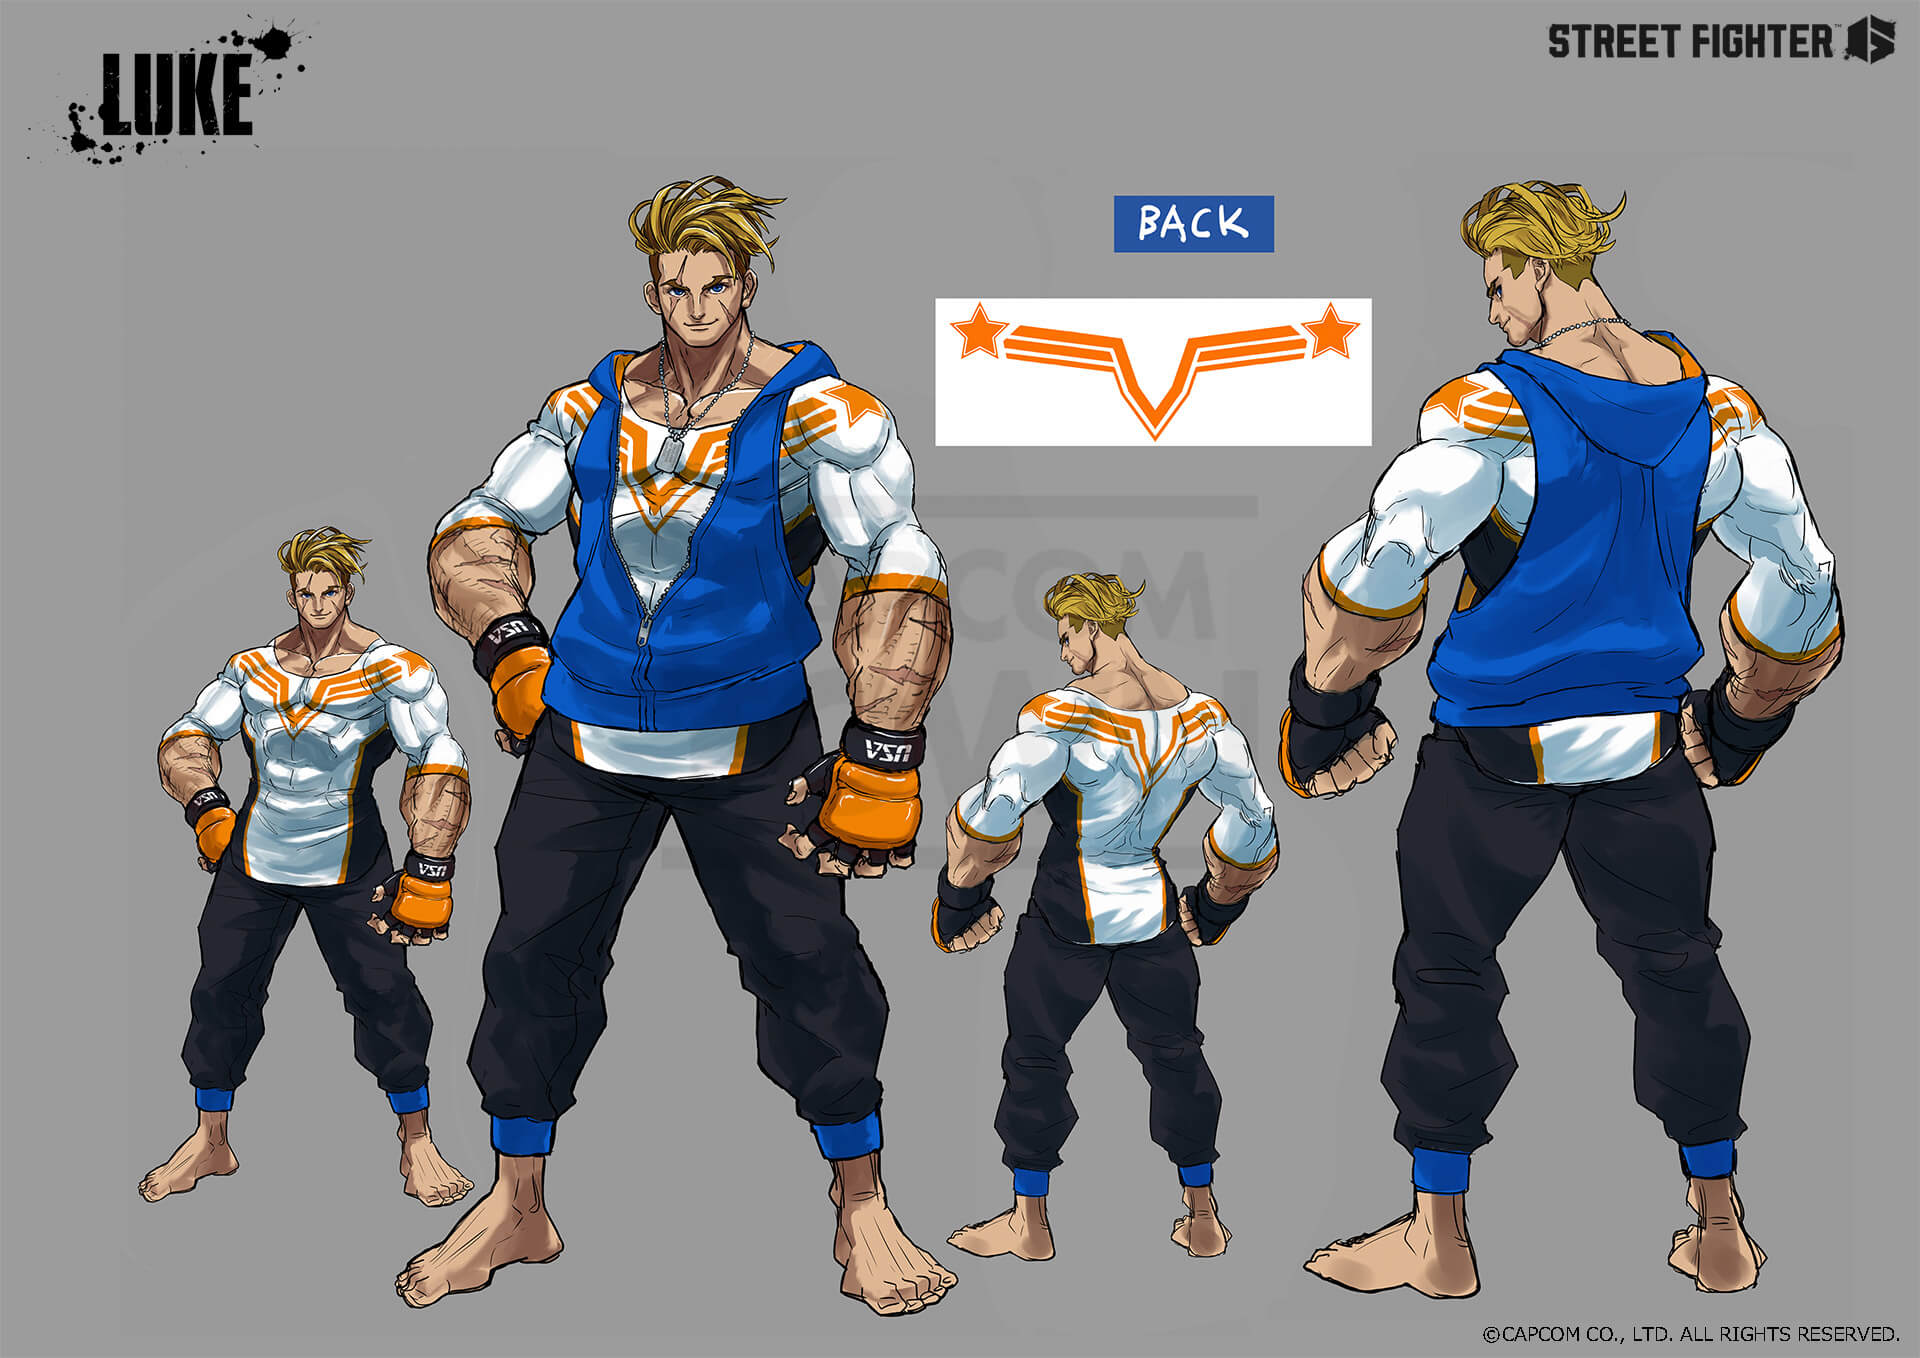 Luke Imagens do personagem, Recurso de desenvolvimento, Street Fighter 6, Museu